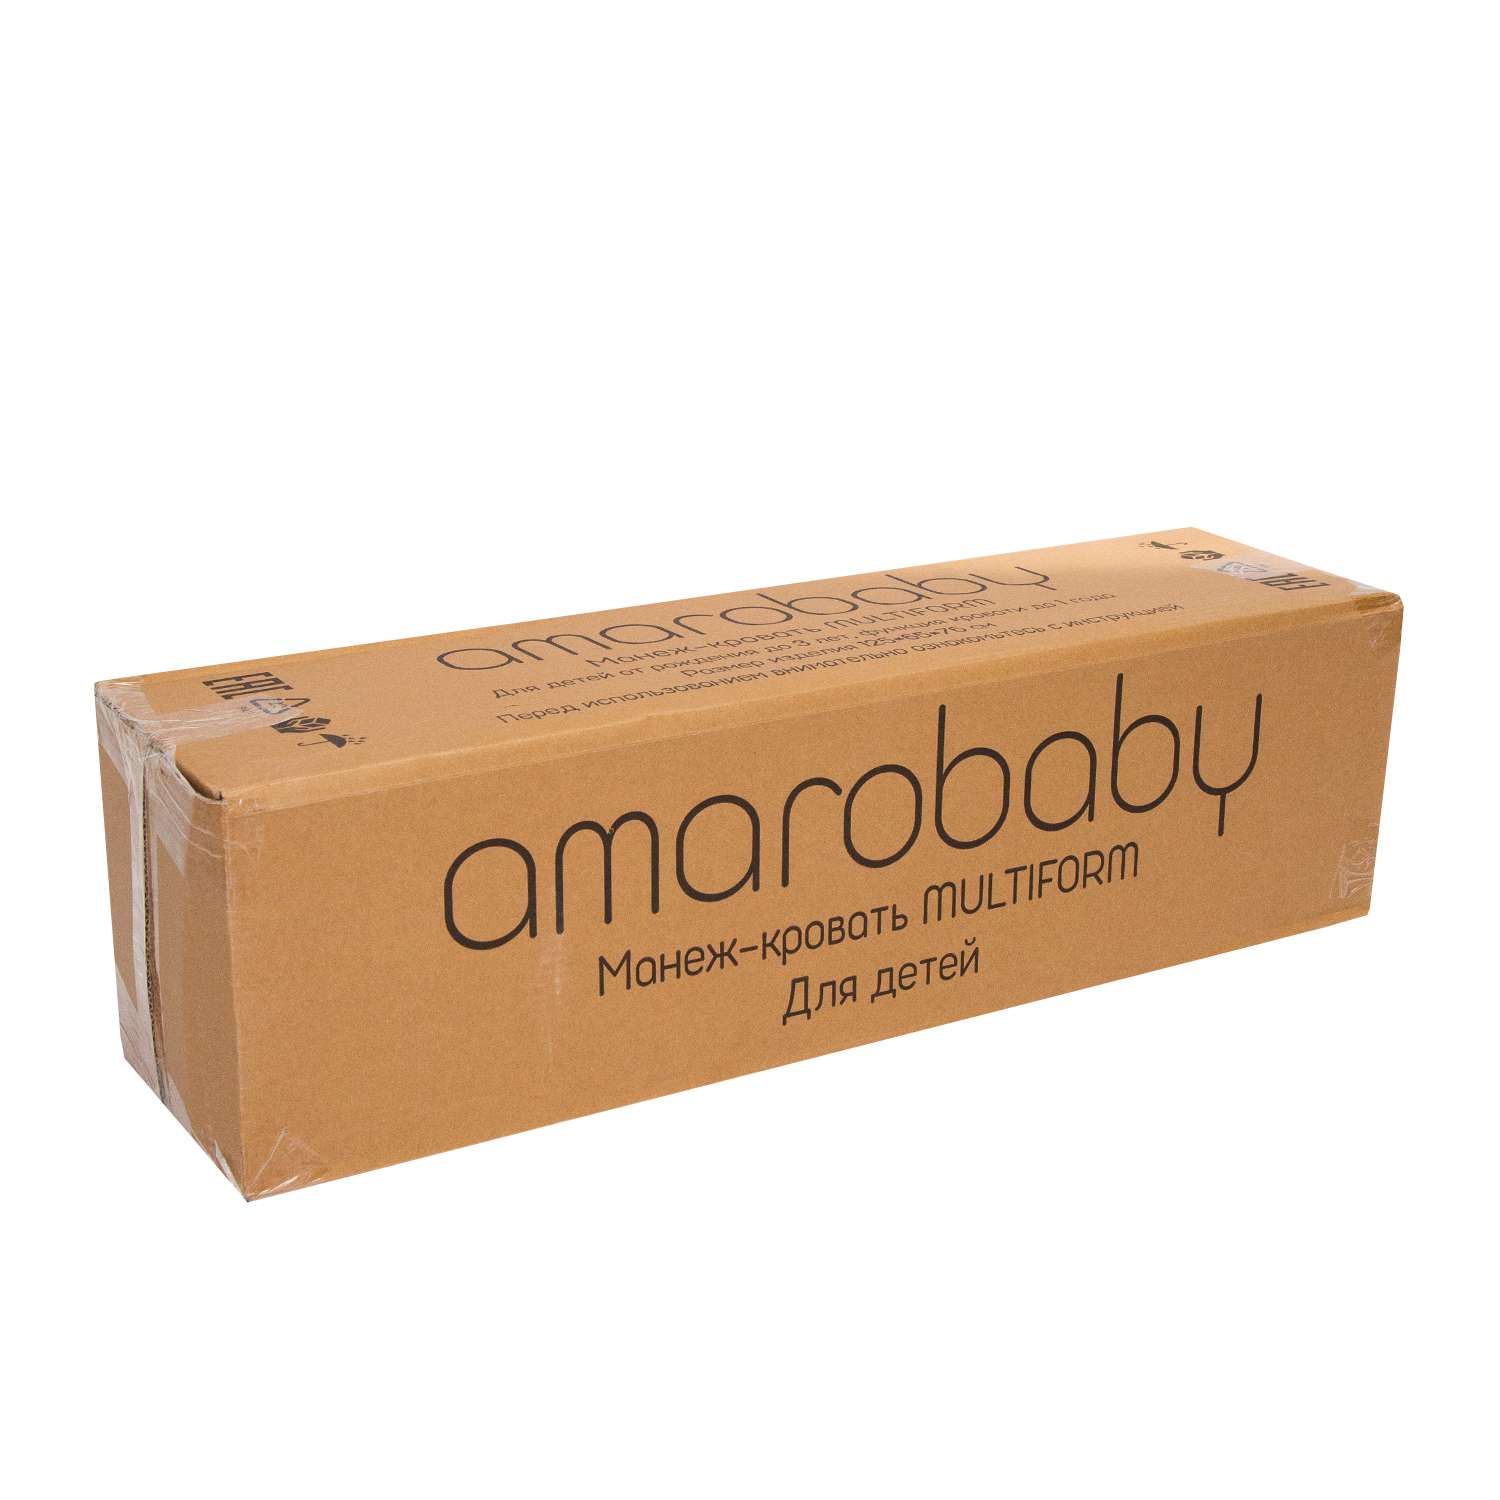 Манеж-кровать AmaroBaby Multiform Dream Fox прямоугольный оливковый AMARO-26MDF-Ol - фото 22